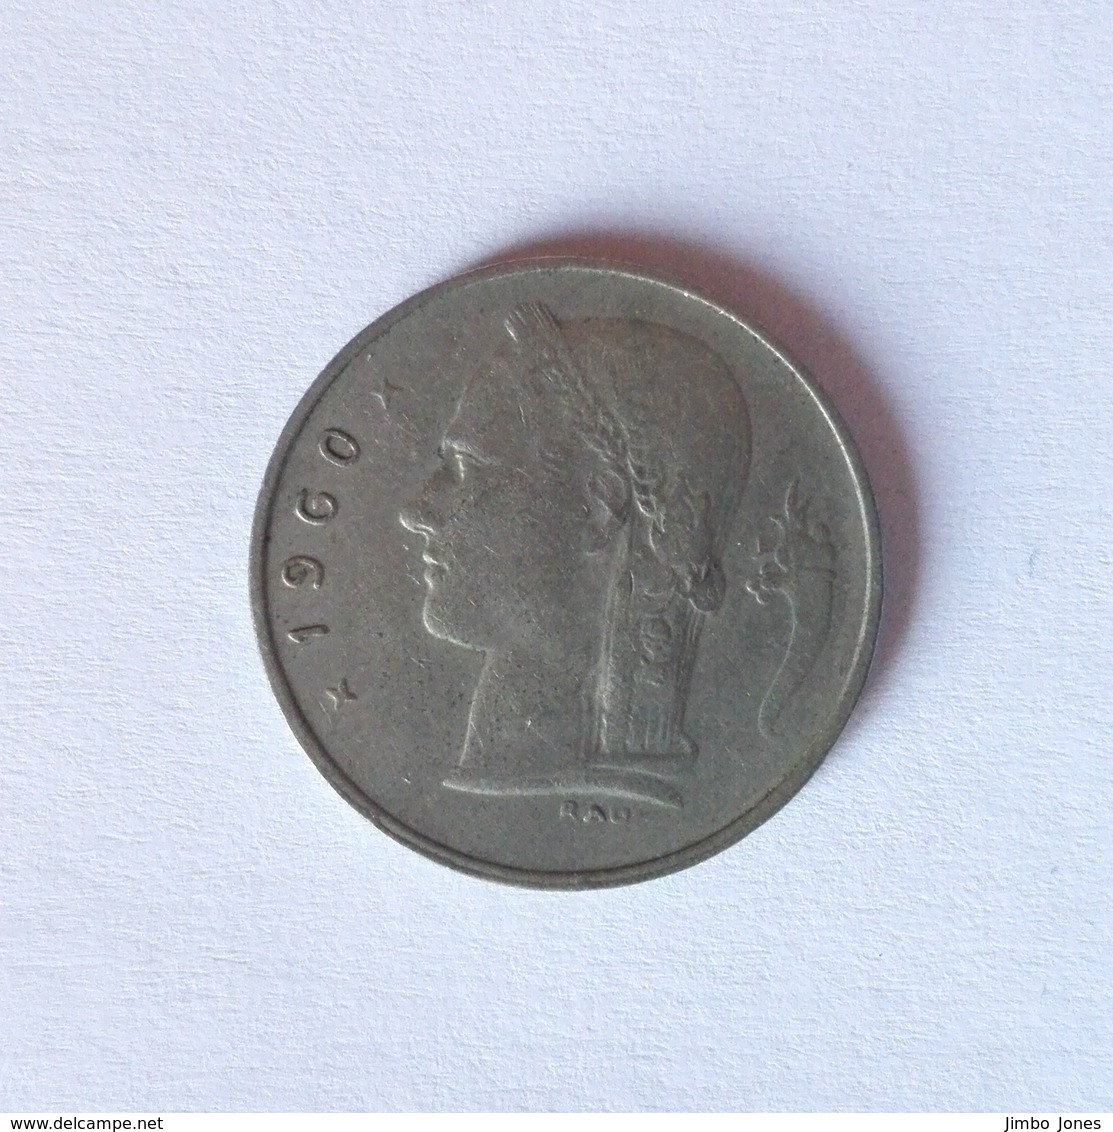 1 Franc Münze Aus Belgien Von 1960 (sehr Schön) NED - 1 Franc